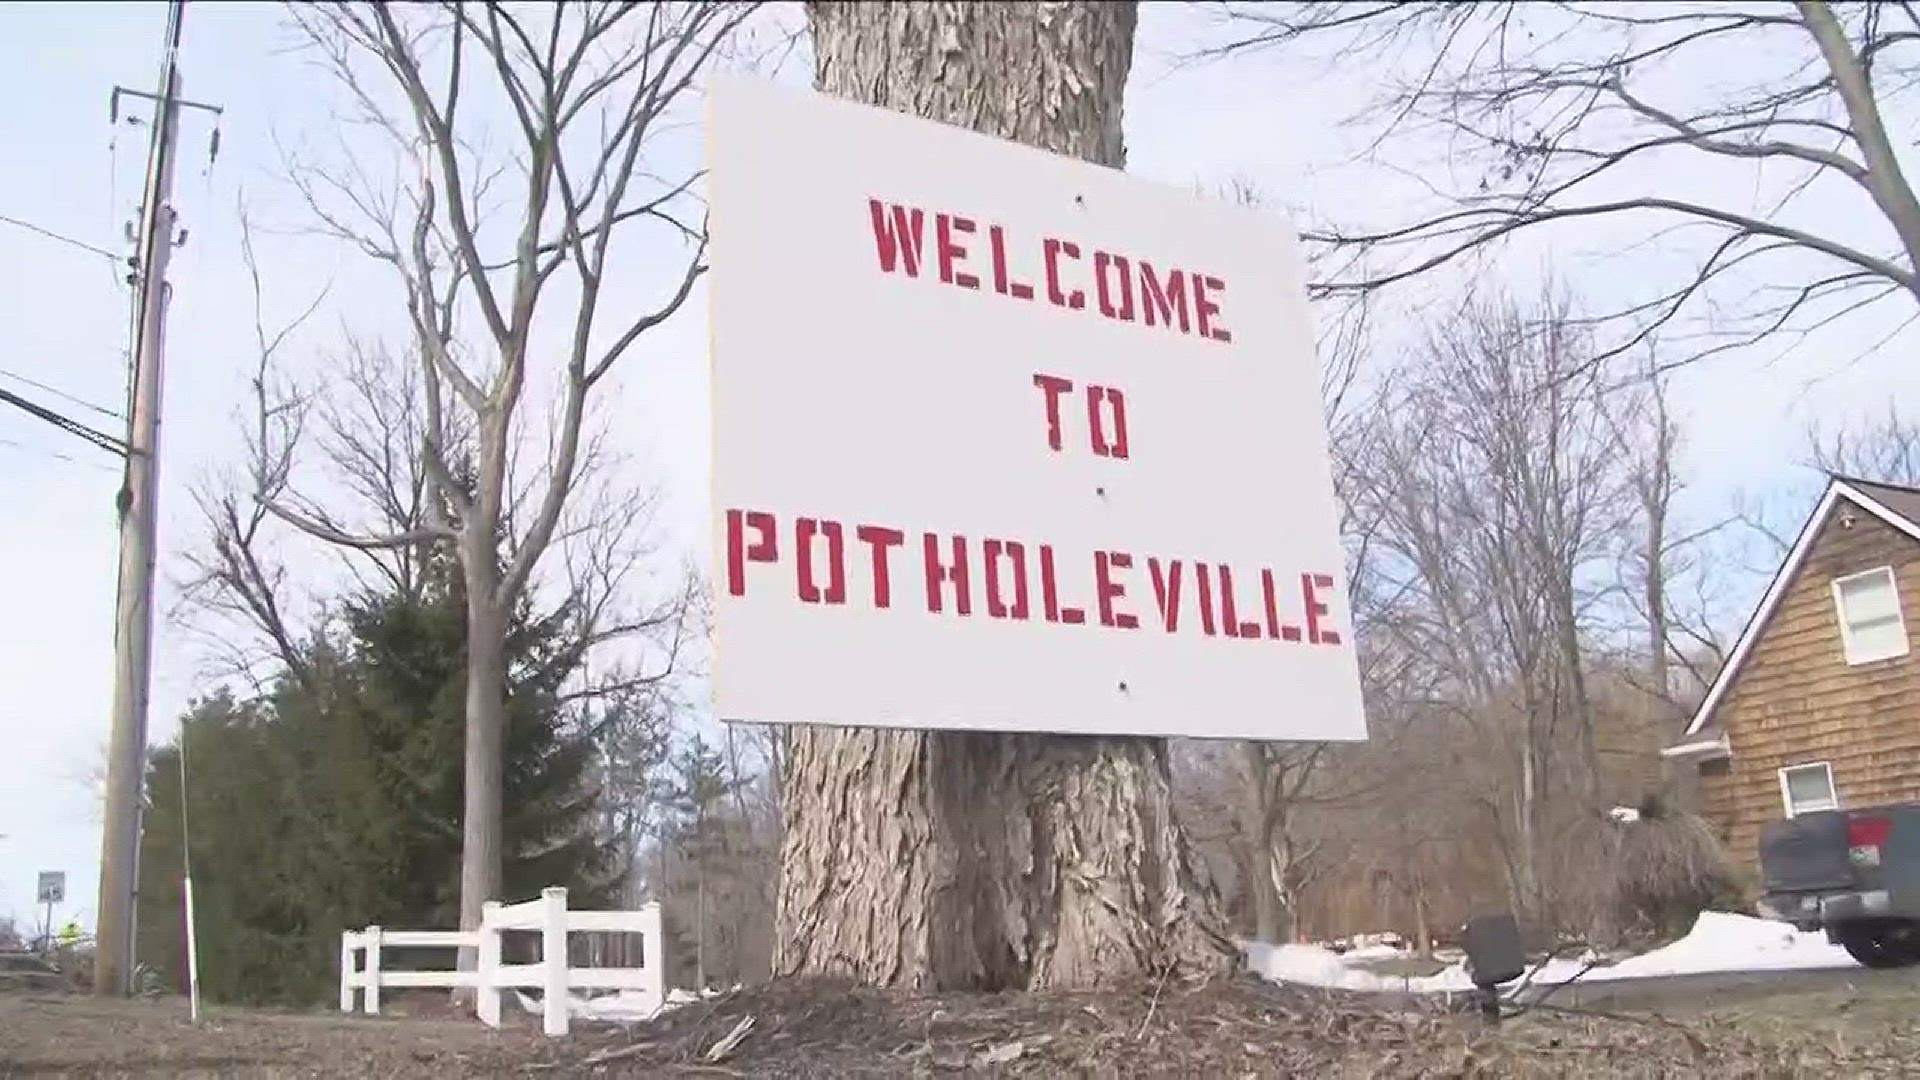 Hamburg Man Says "Welcome To Potholeville"